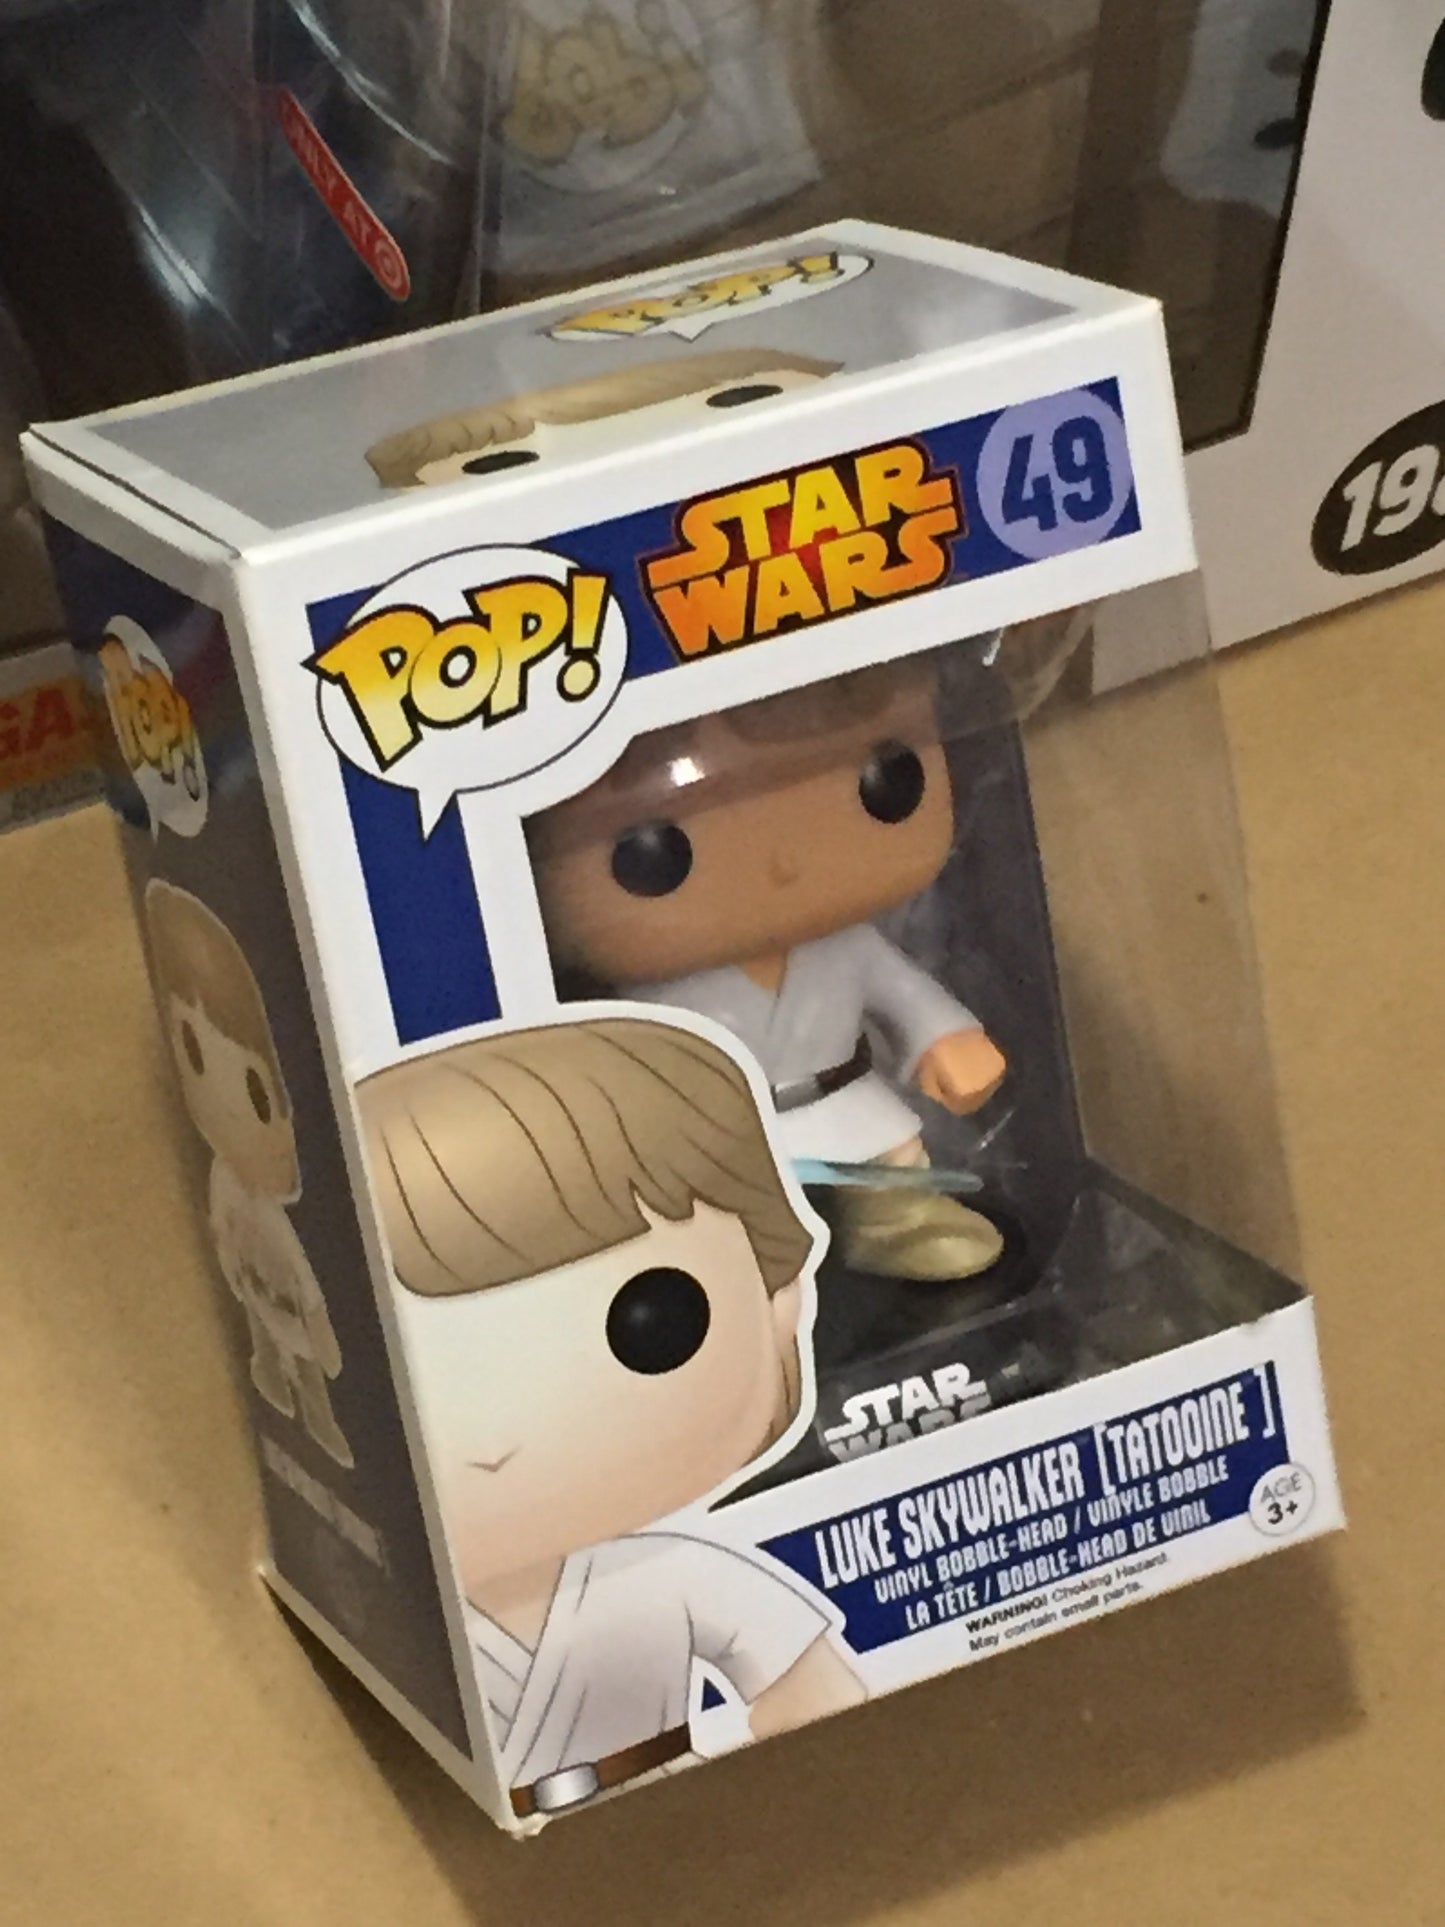 Star Wars Luke Skywalker [Tatooine] #49 (blue box) Funko Pop! Vinyl Bobble-Head 2020